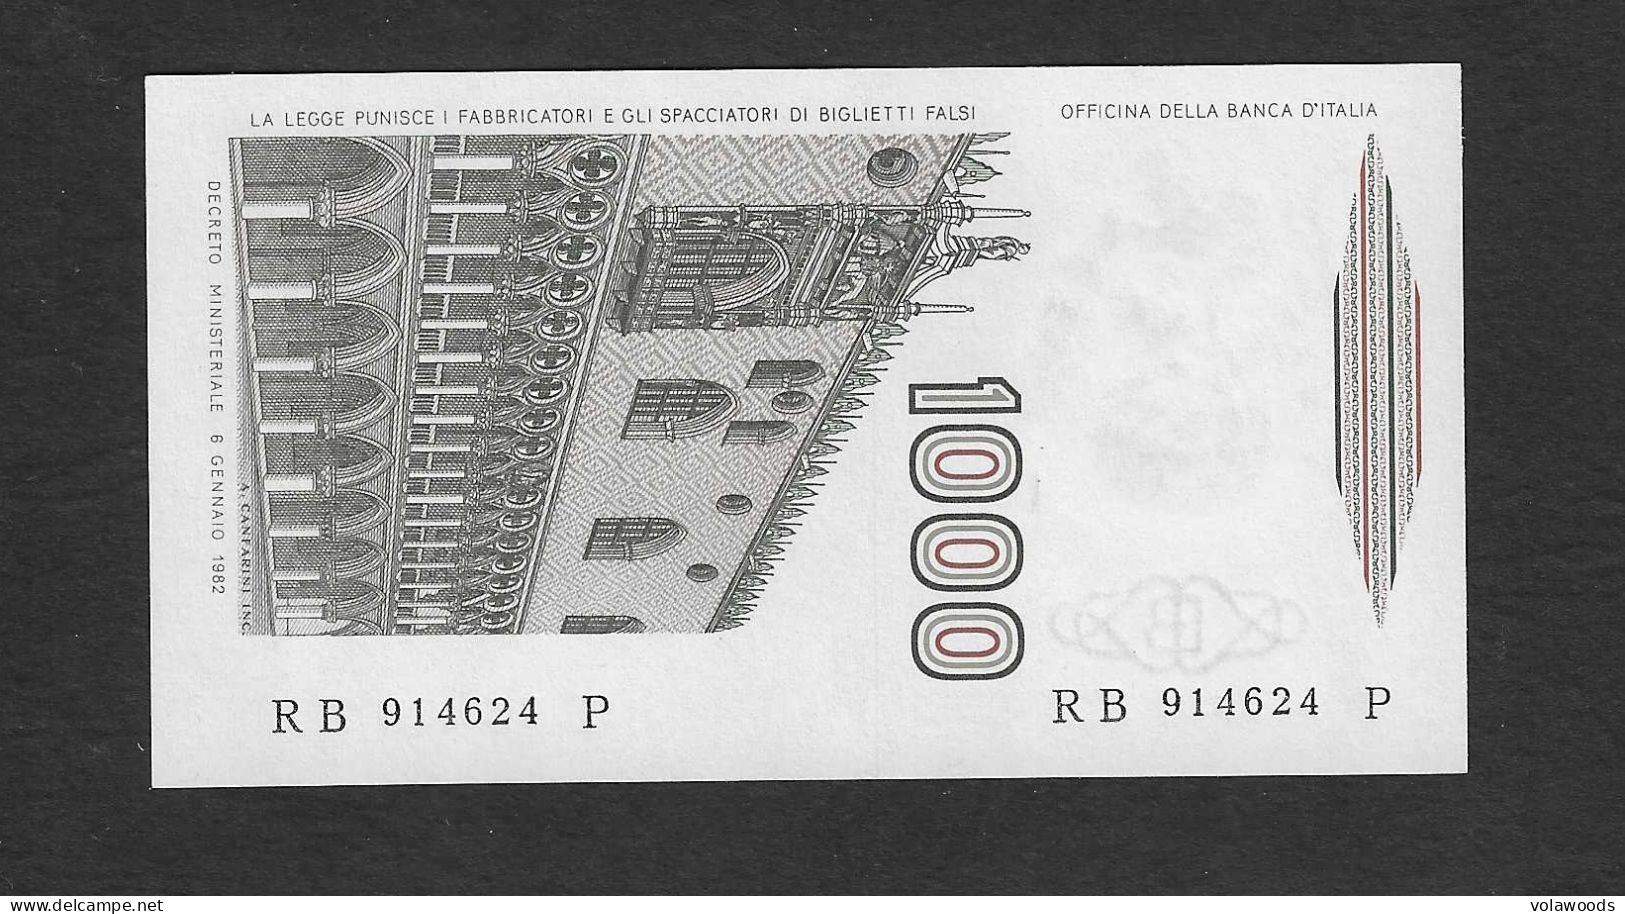 Italia - Banconota Non Circolata FdS UNC Da 1000 Lire " Marco Polo" Lettera B P-109a - 1983 #19 - 1000 Lire